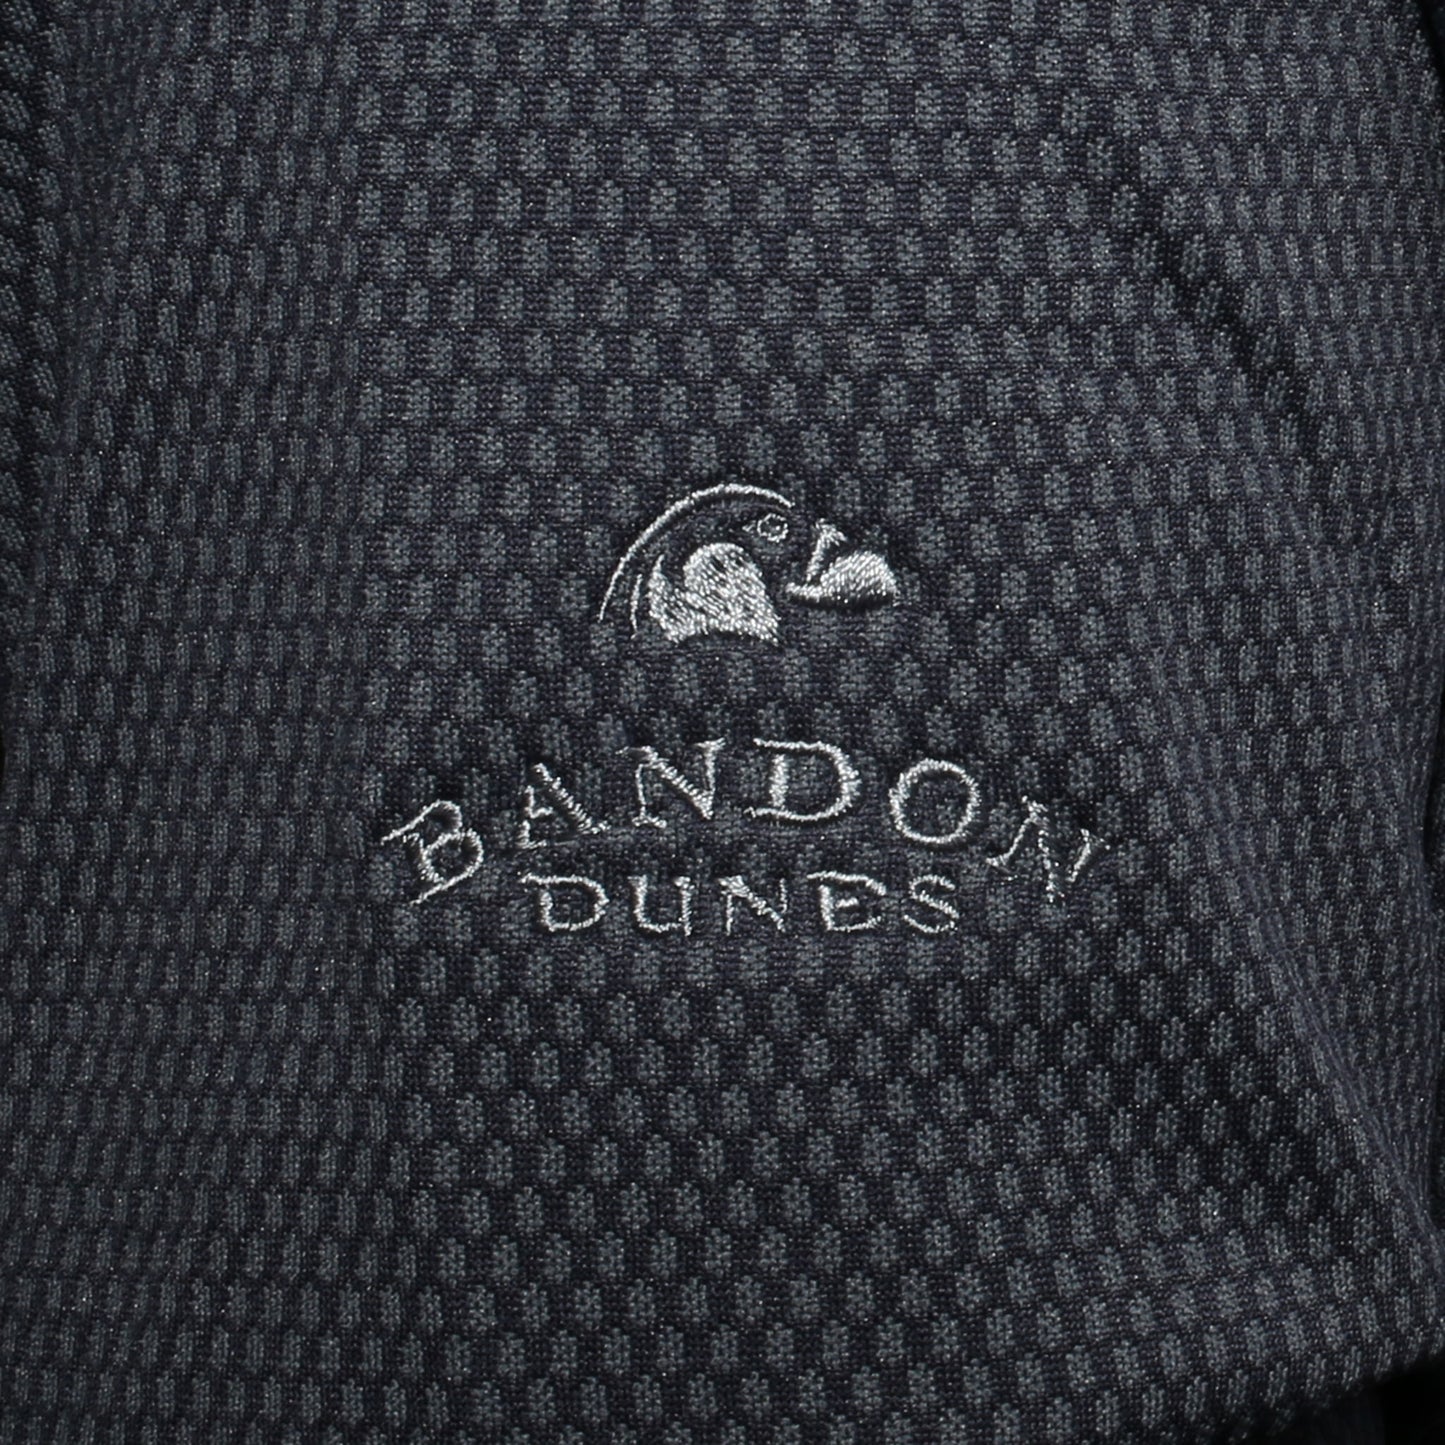 Hybrid Jacket - Bandon Dunes